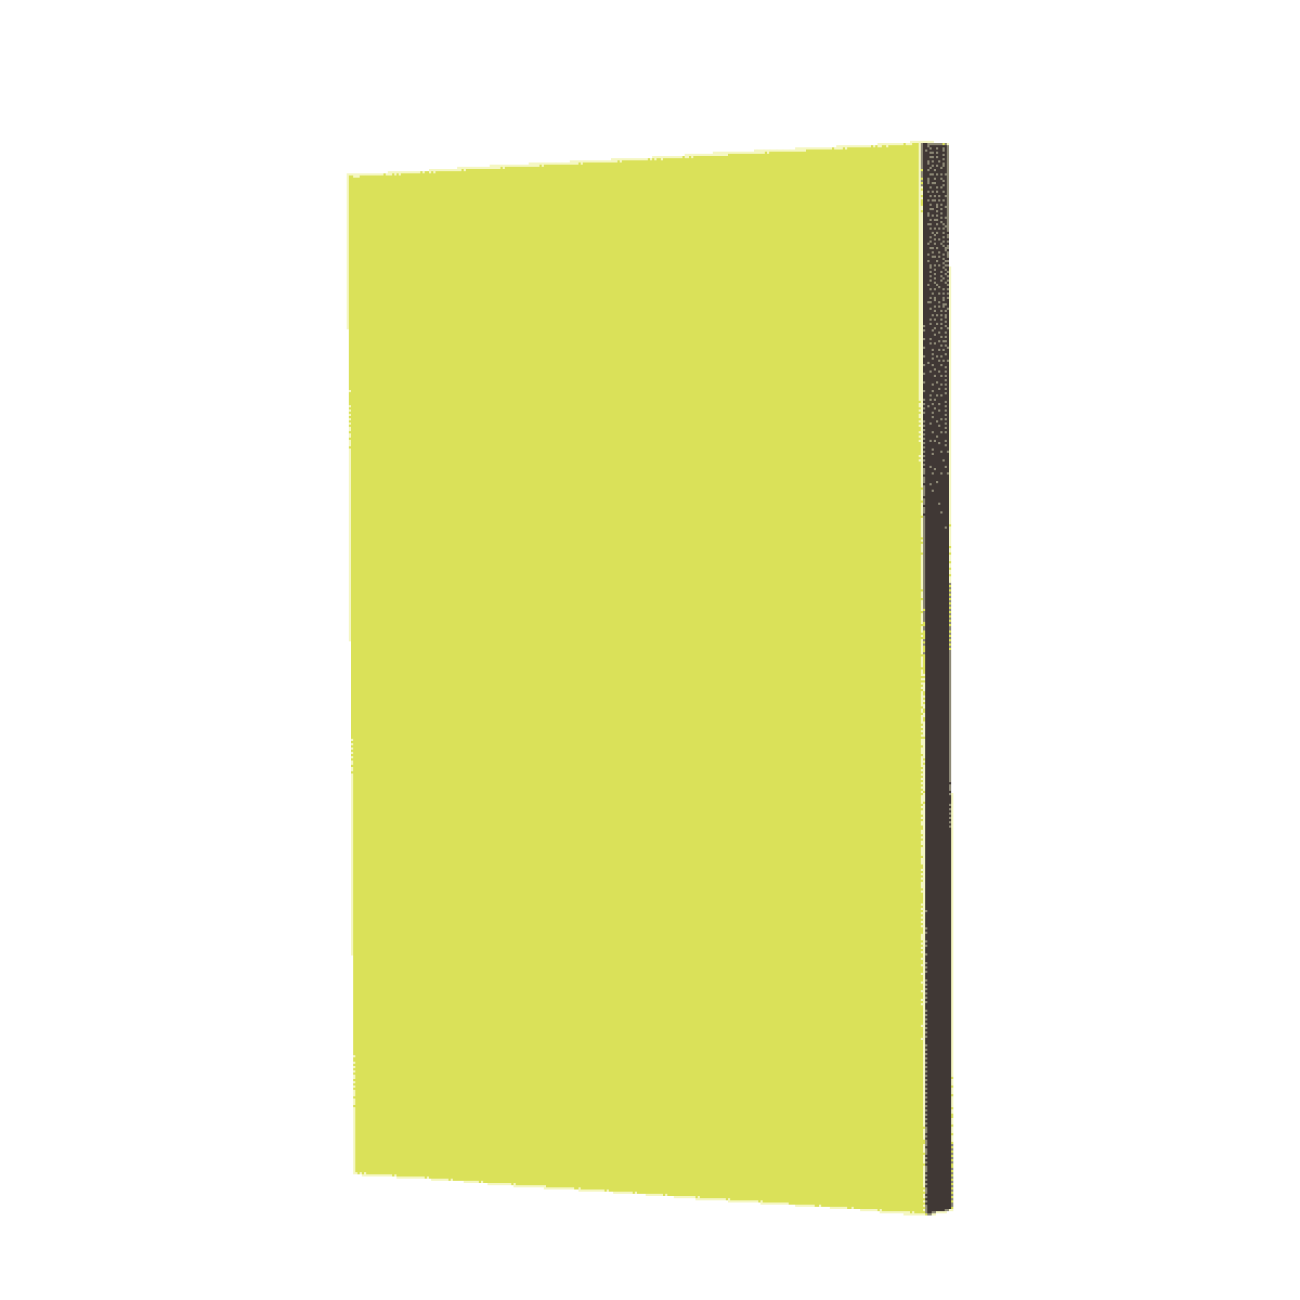 Hpl Platten Kronoart® Premium Color Limone